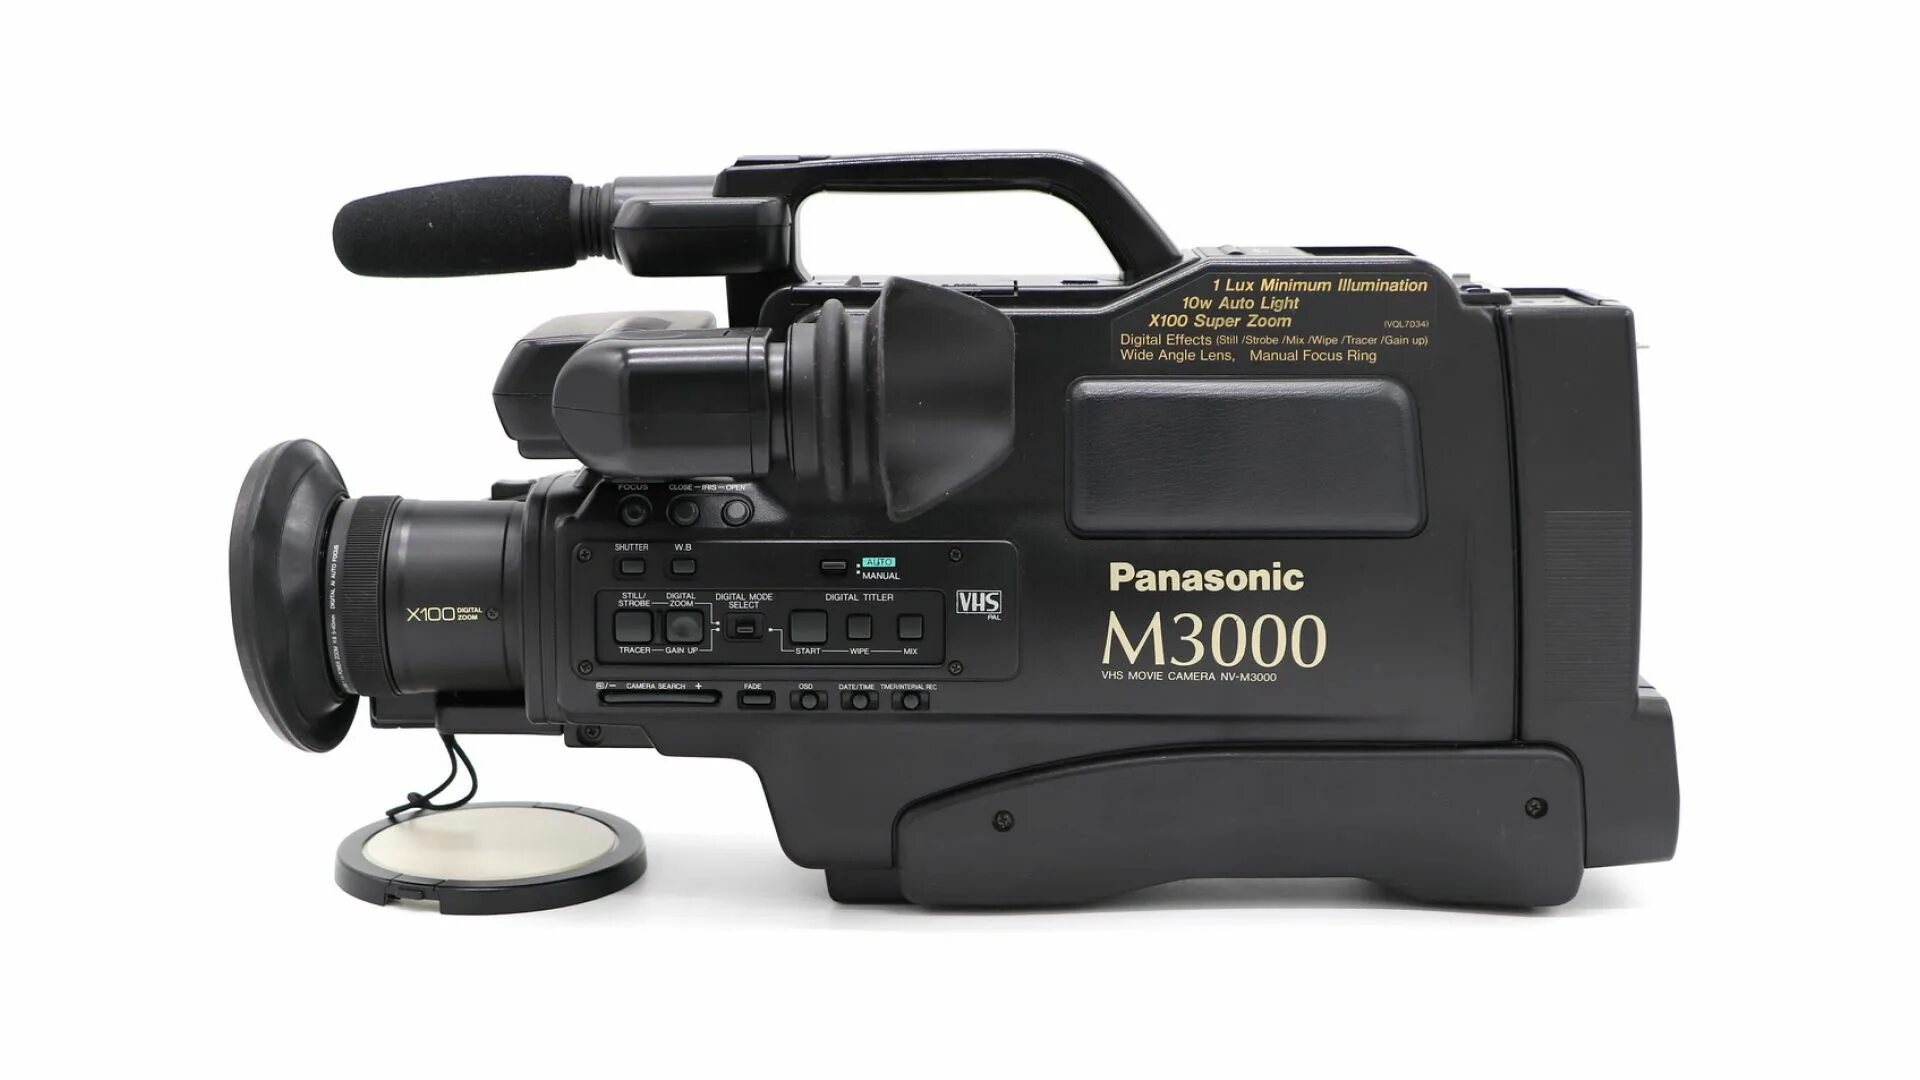 Видеокамера панасоник. Видеокамера Panasonic NV-m9500. Panasonic VHS NV-m3000. Видеокамера Panasonic m3000 VHS. Панасоник м 3000.